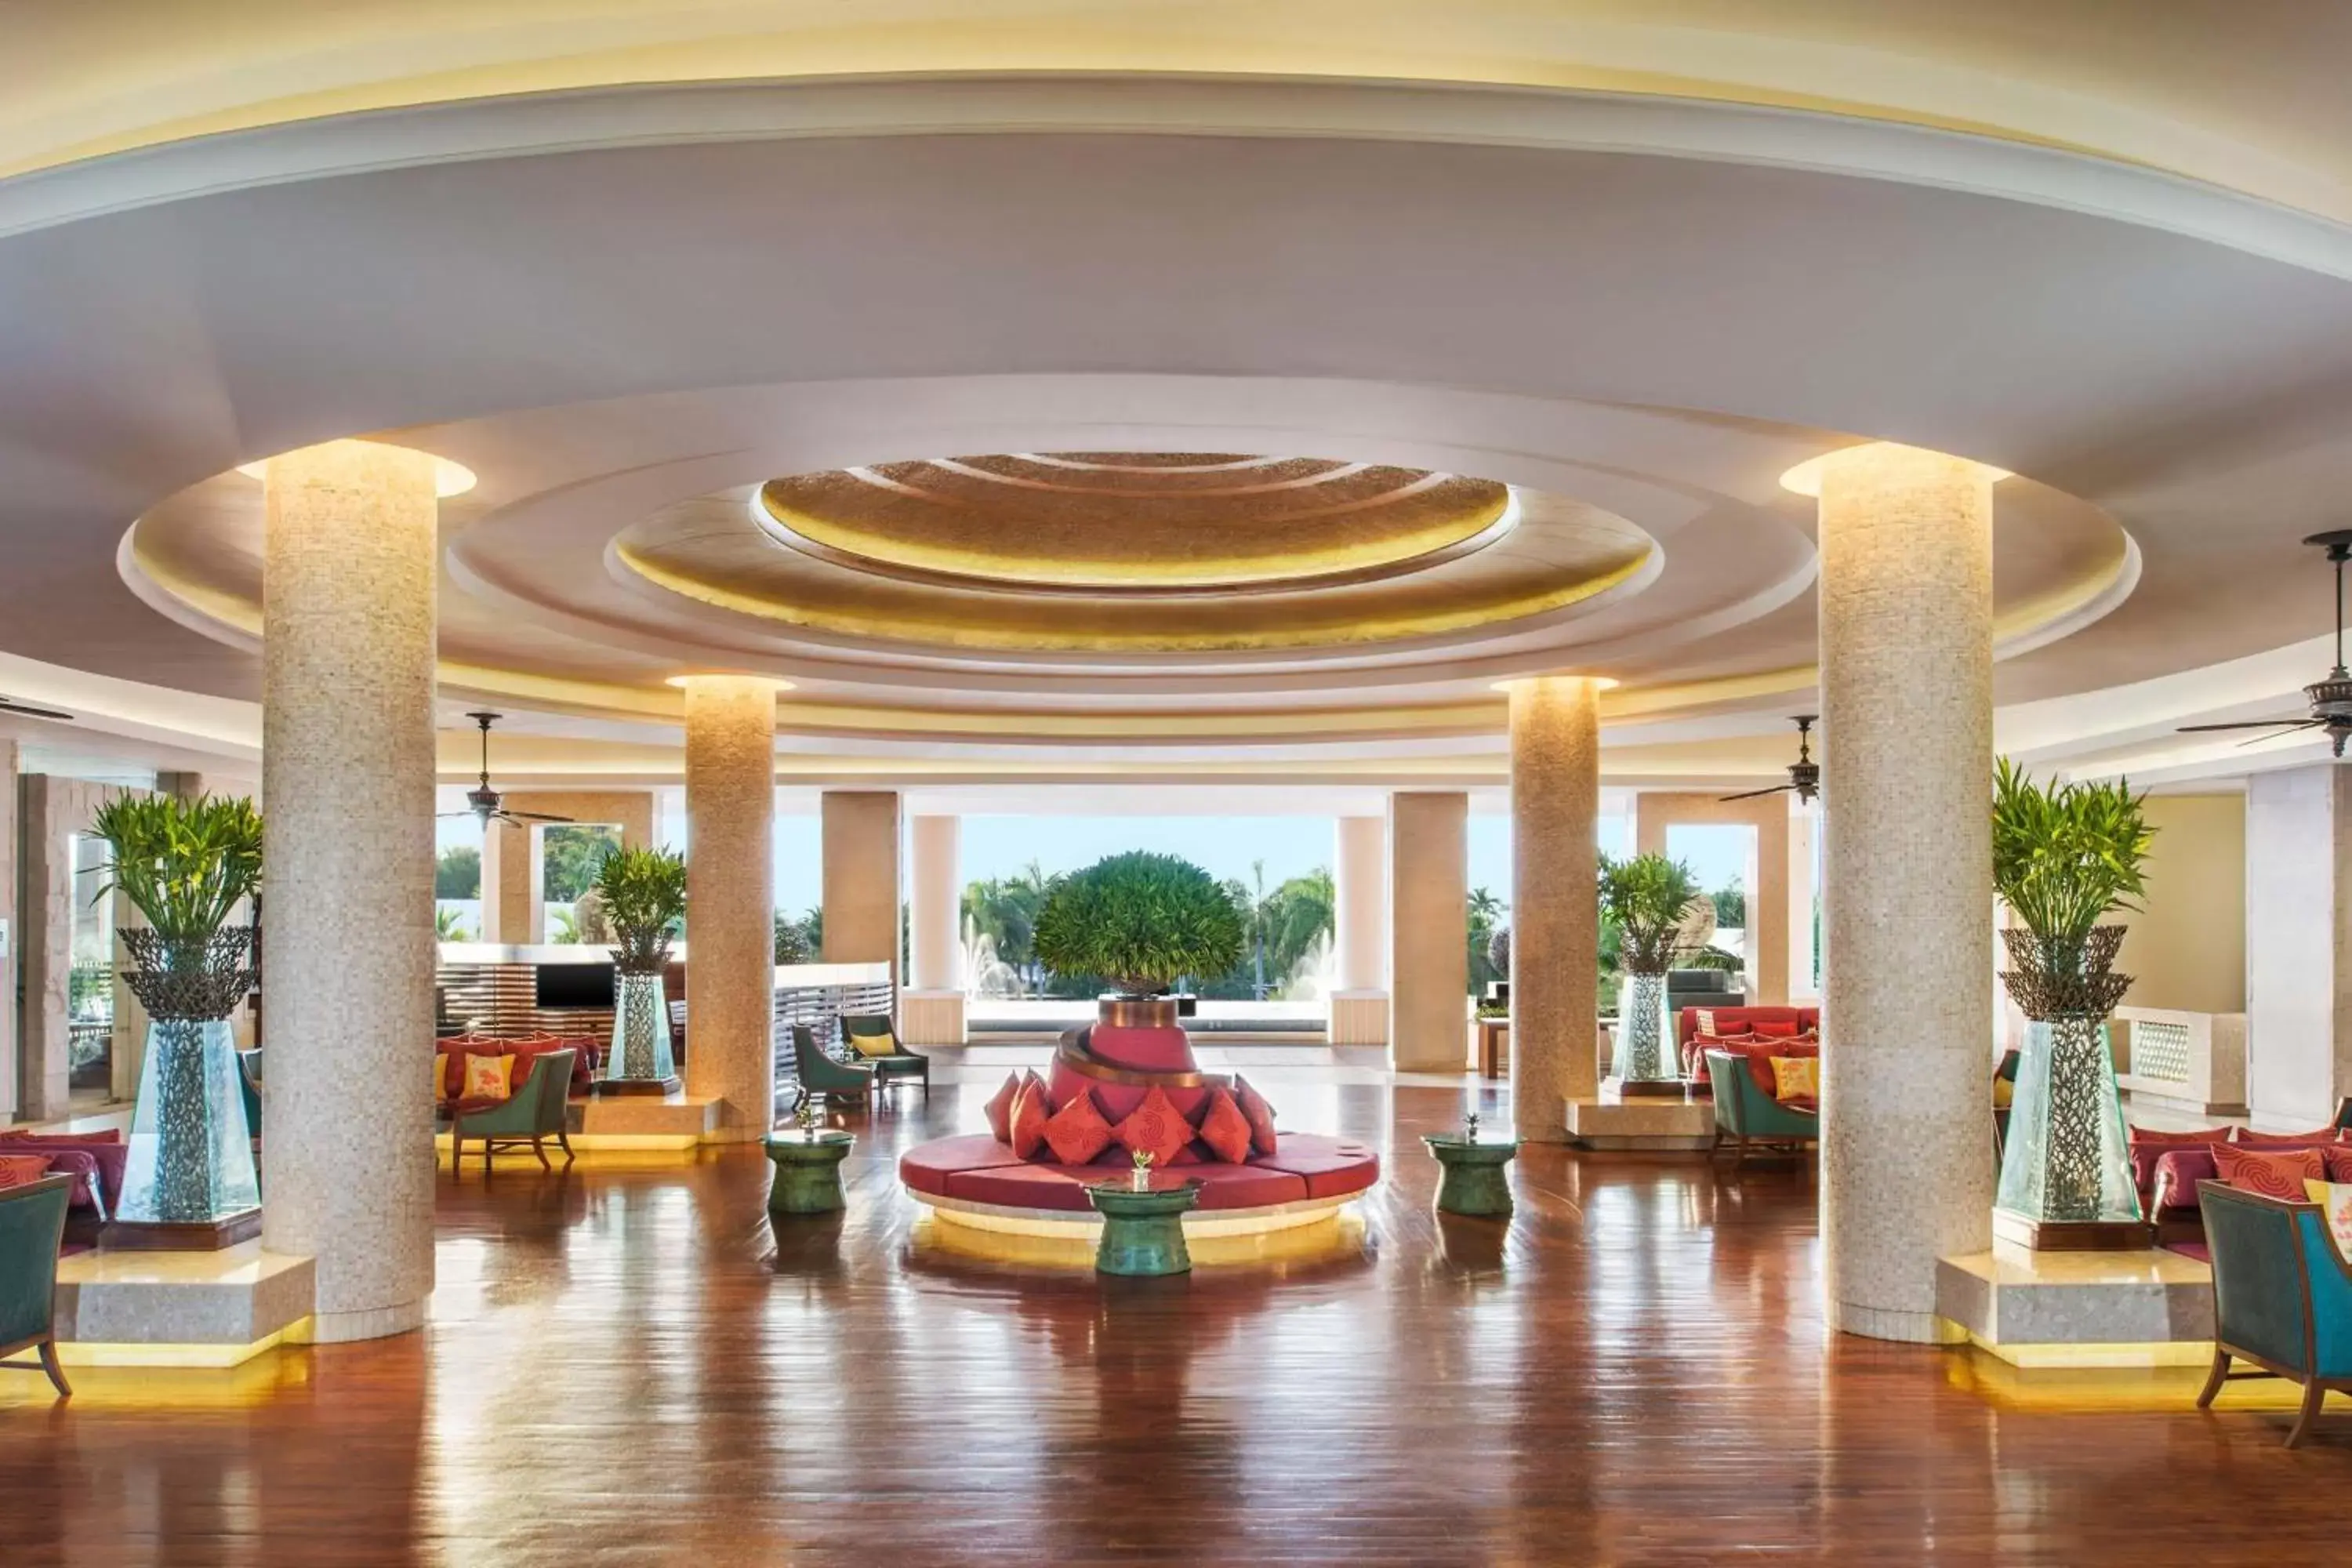 Lobby or reception, Lobby/Reception in Sheraton Hua Hin Resort & Spa